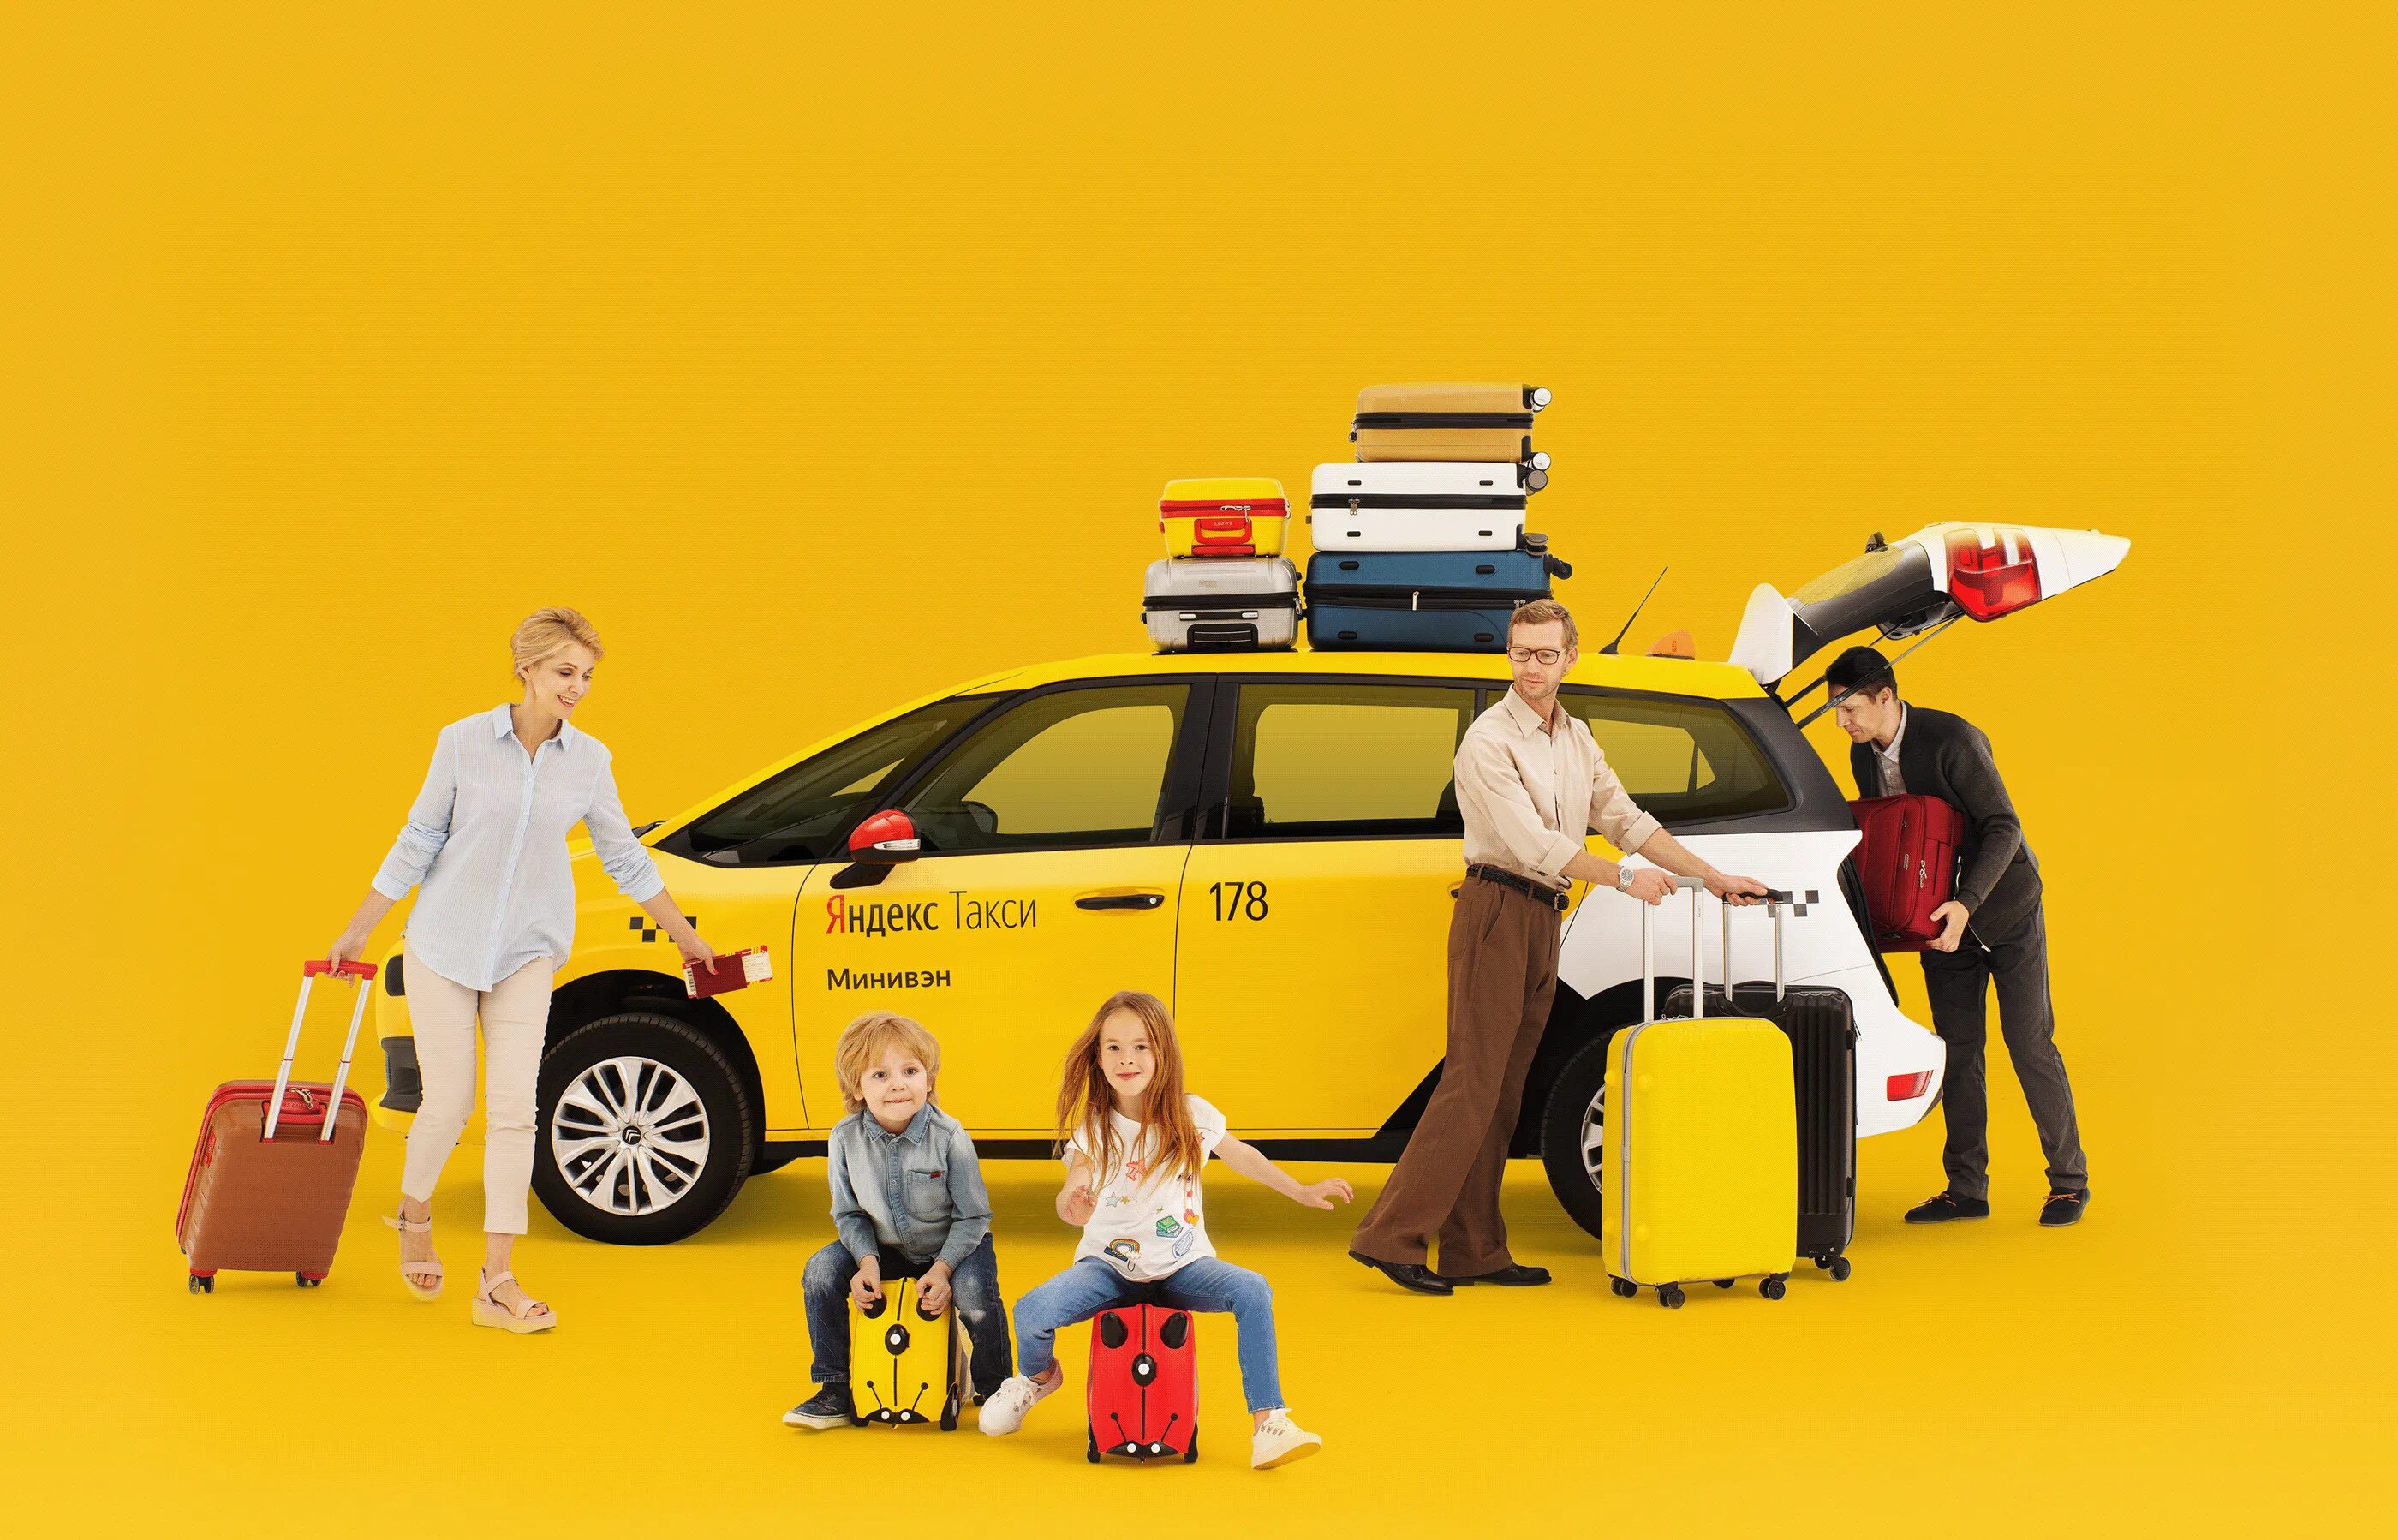 Реклама такси. Креативная реклама такси. Такси картинки.